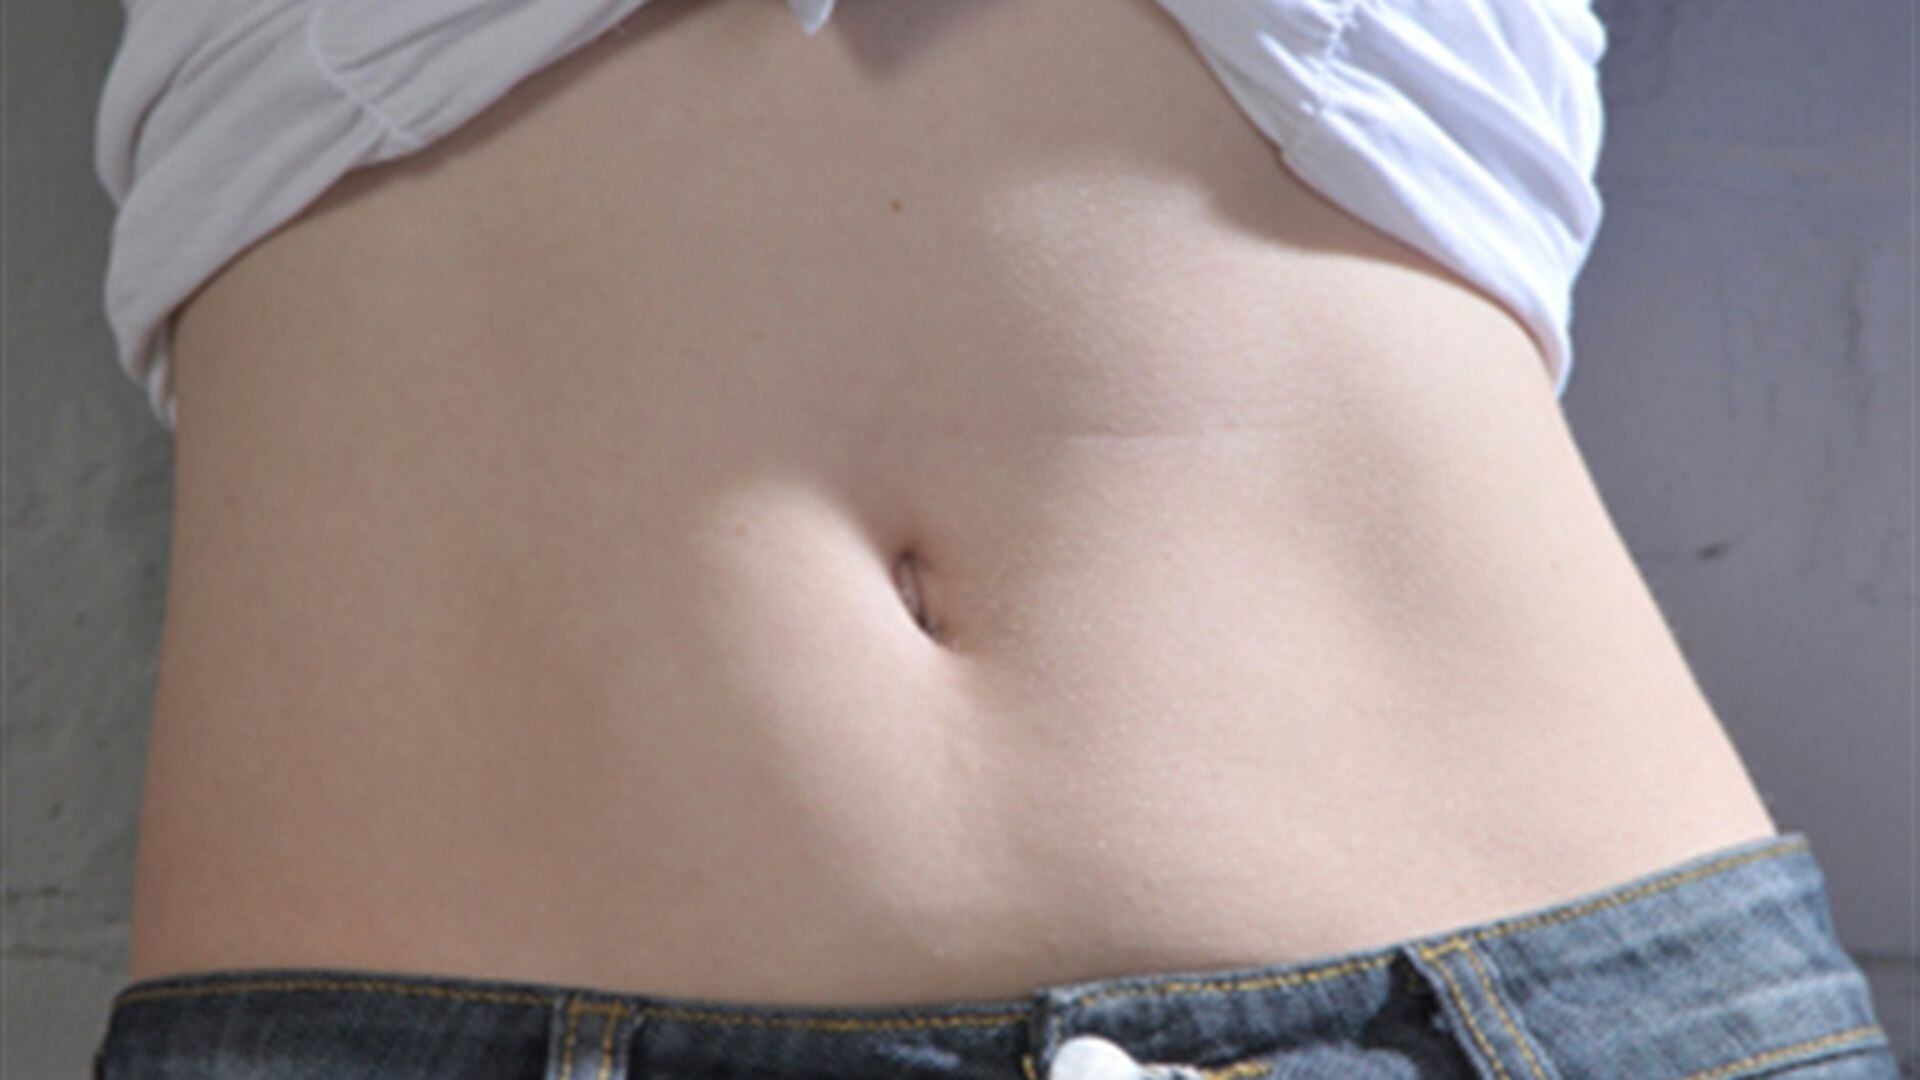 7 ejercicios para reducir el “vientre caído”  Ejercicios, Ejercicios para  abdomen, Ejercicios de entrenamiento